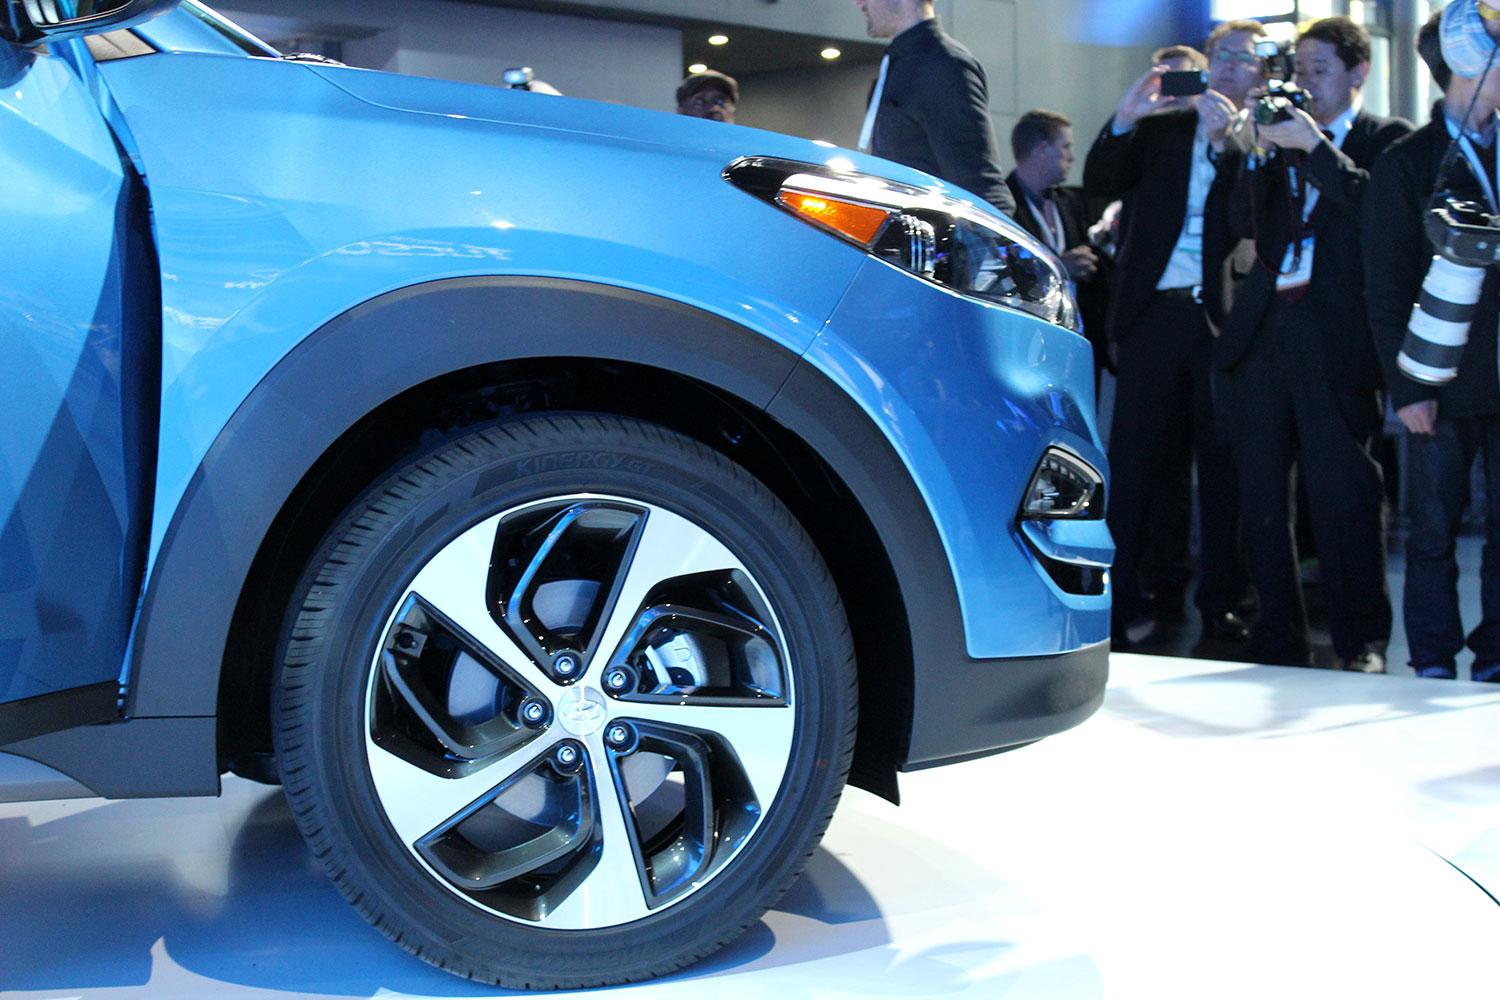 2016 Hyundai Tuscon tire